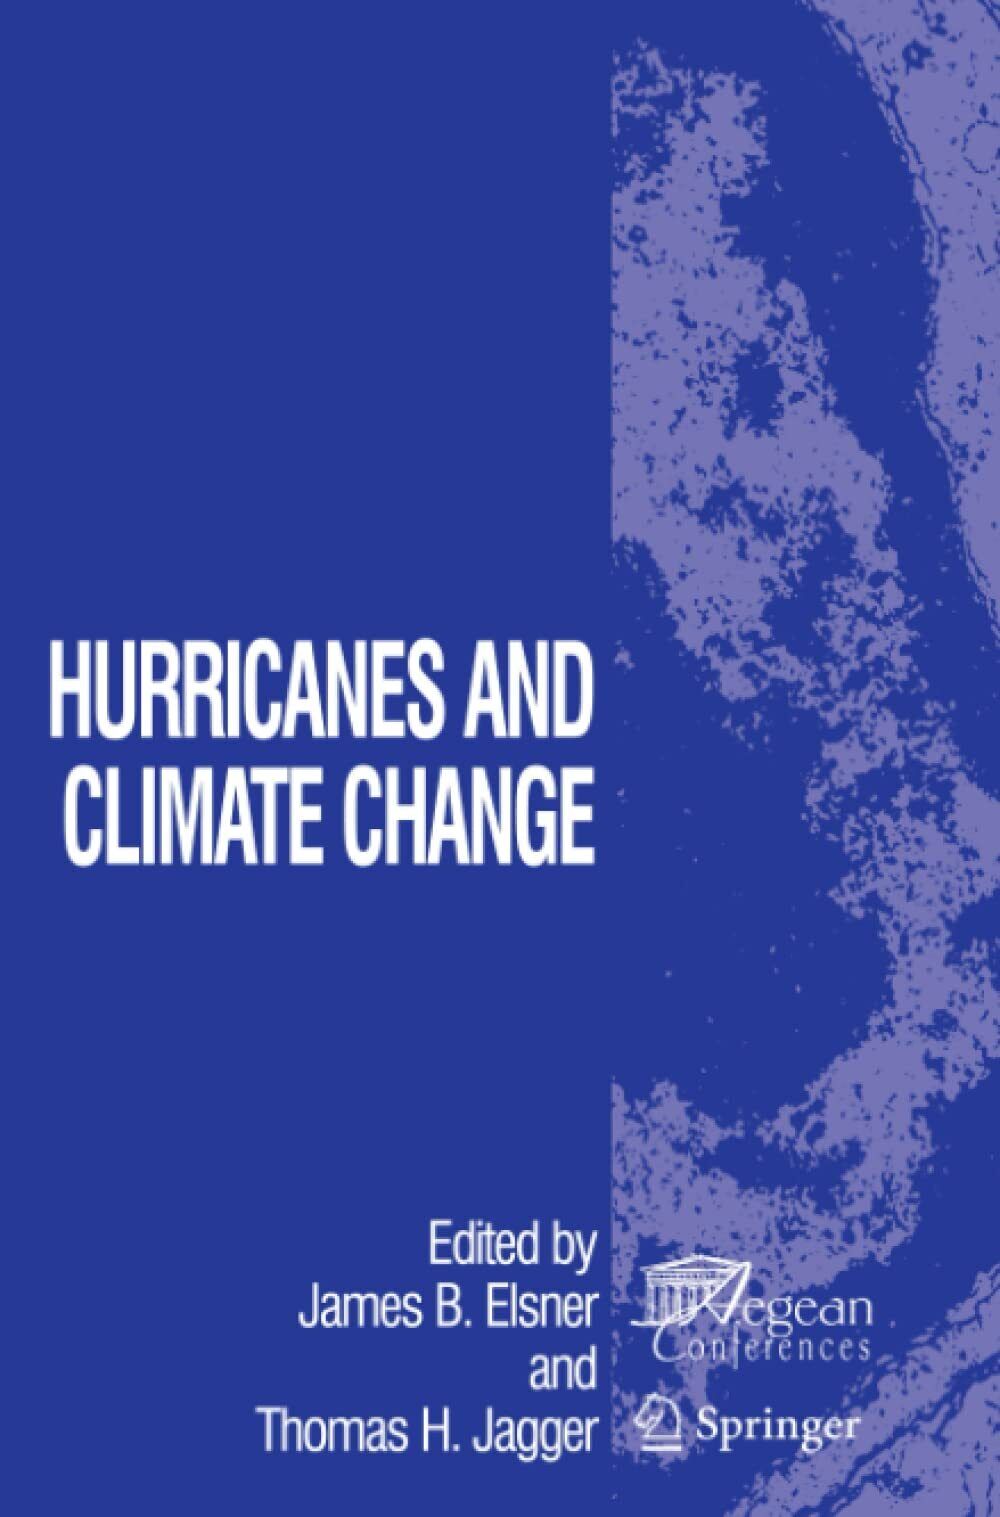 Hurricanes and Climate Change -  James B. Elsner - Springer, 2010